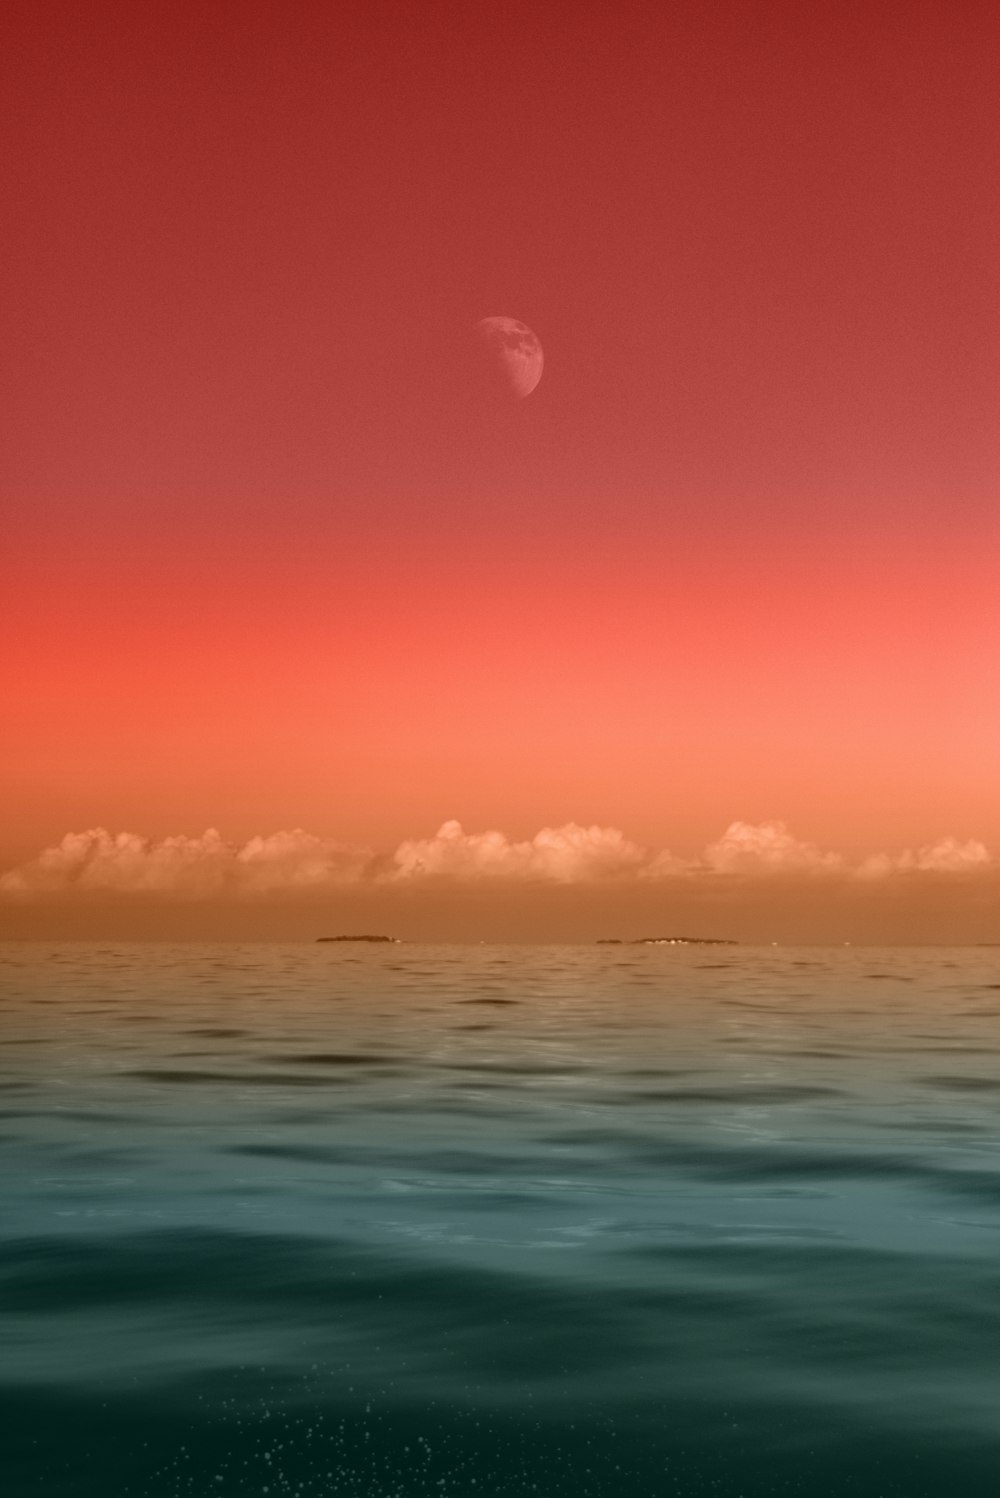 fotografia da paisagem marítima do mar sob a meia-lua